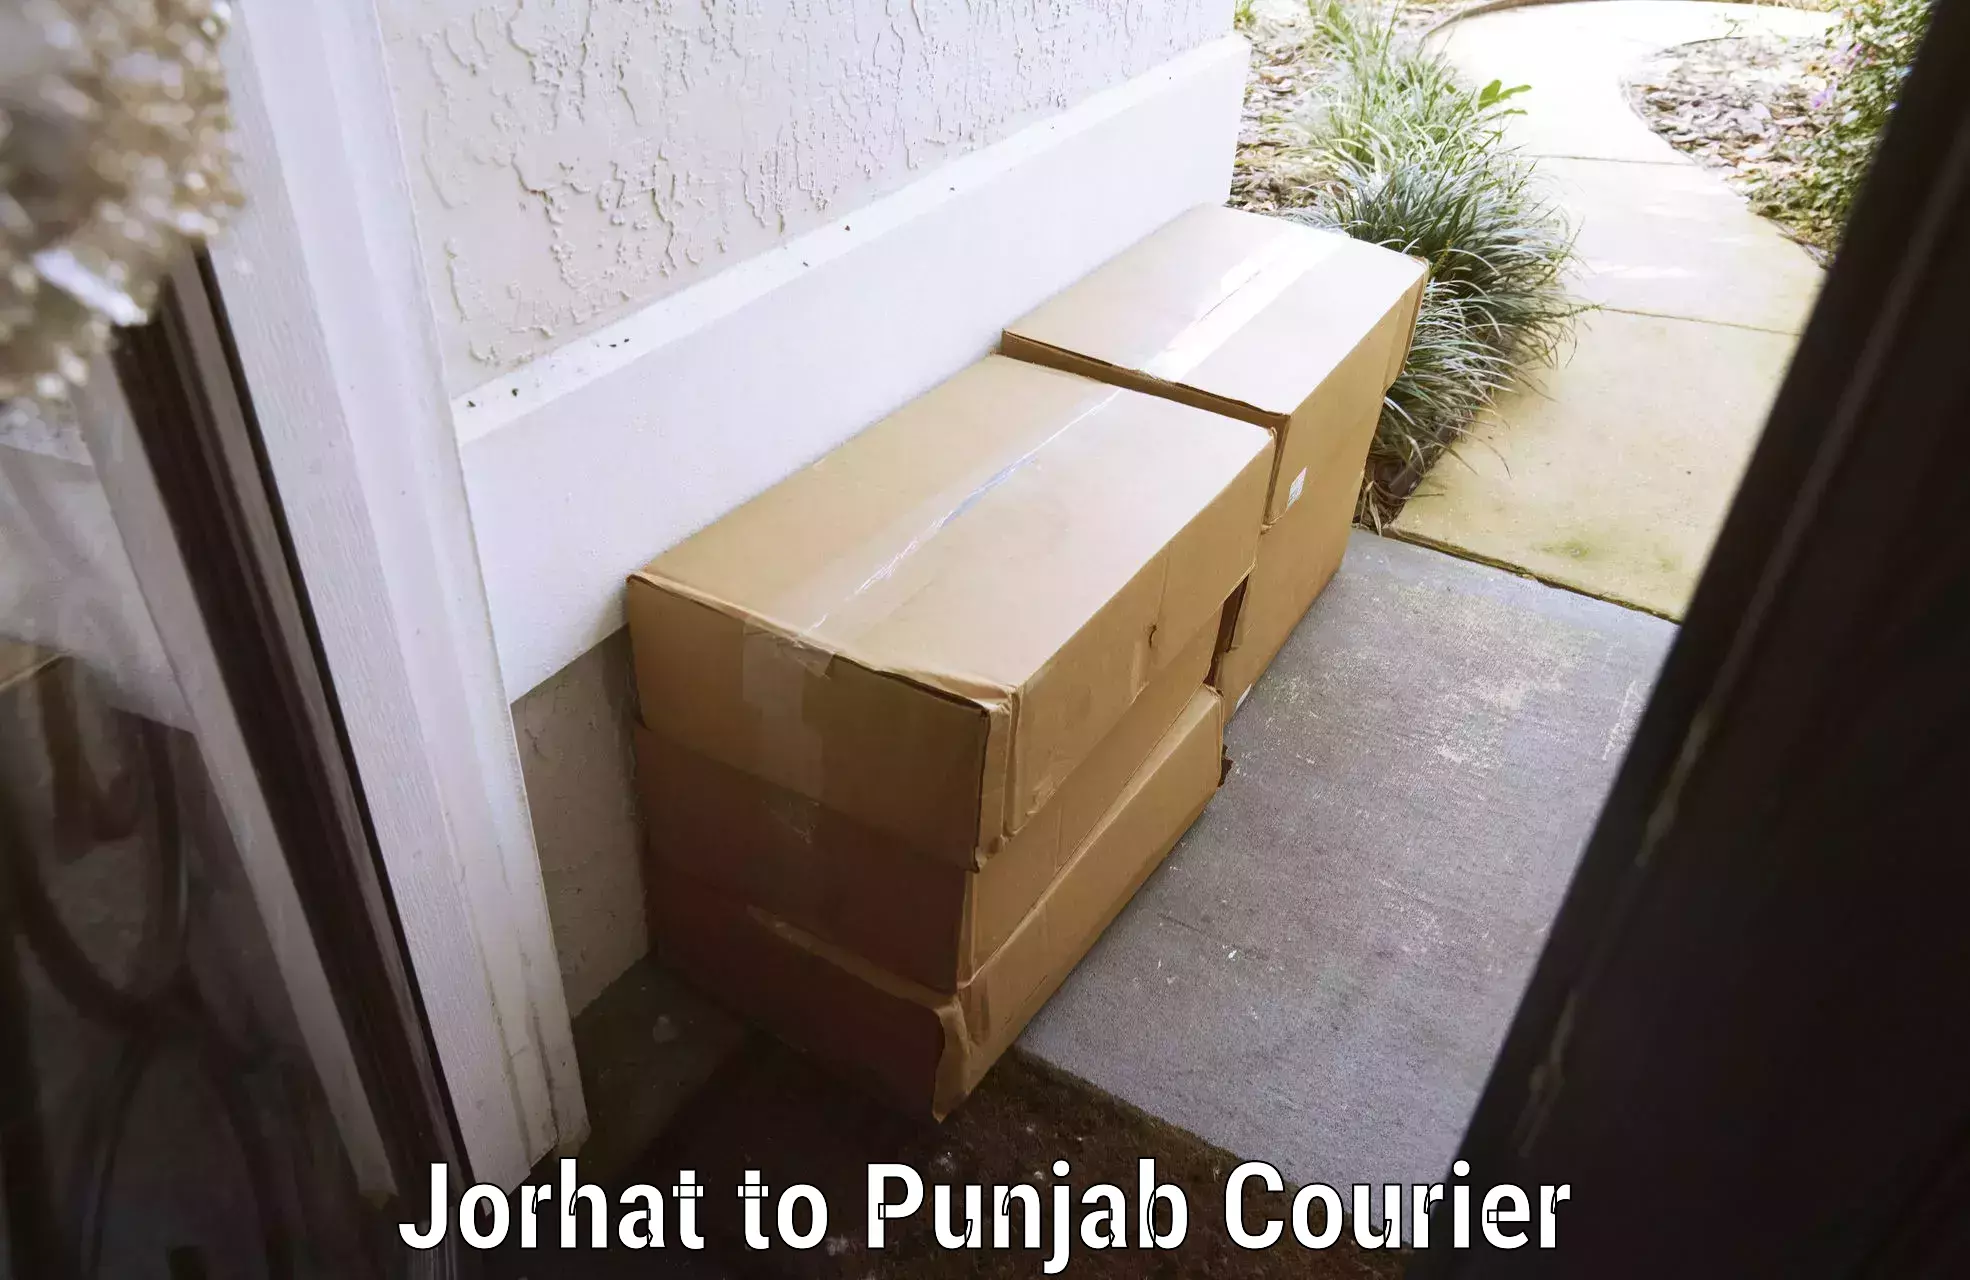 Luggage delivery estimate Jorhat to Dinanagar